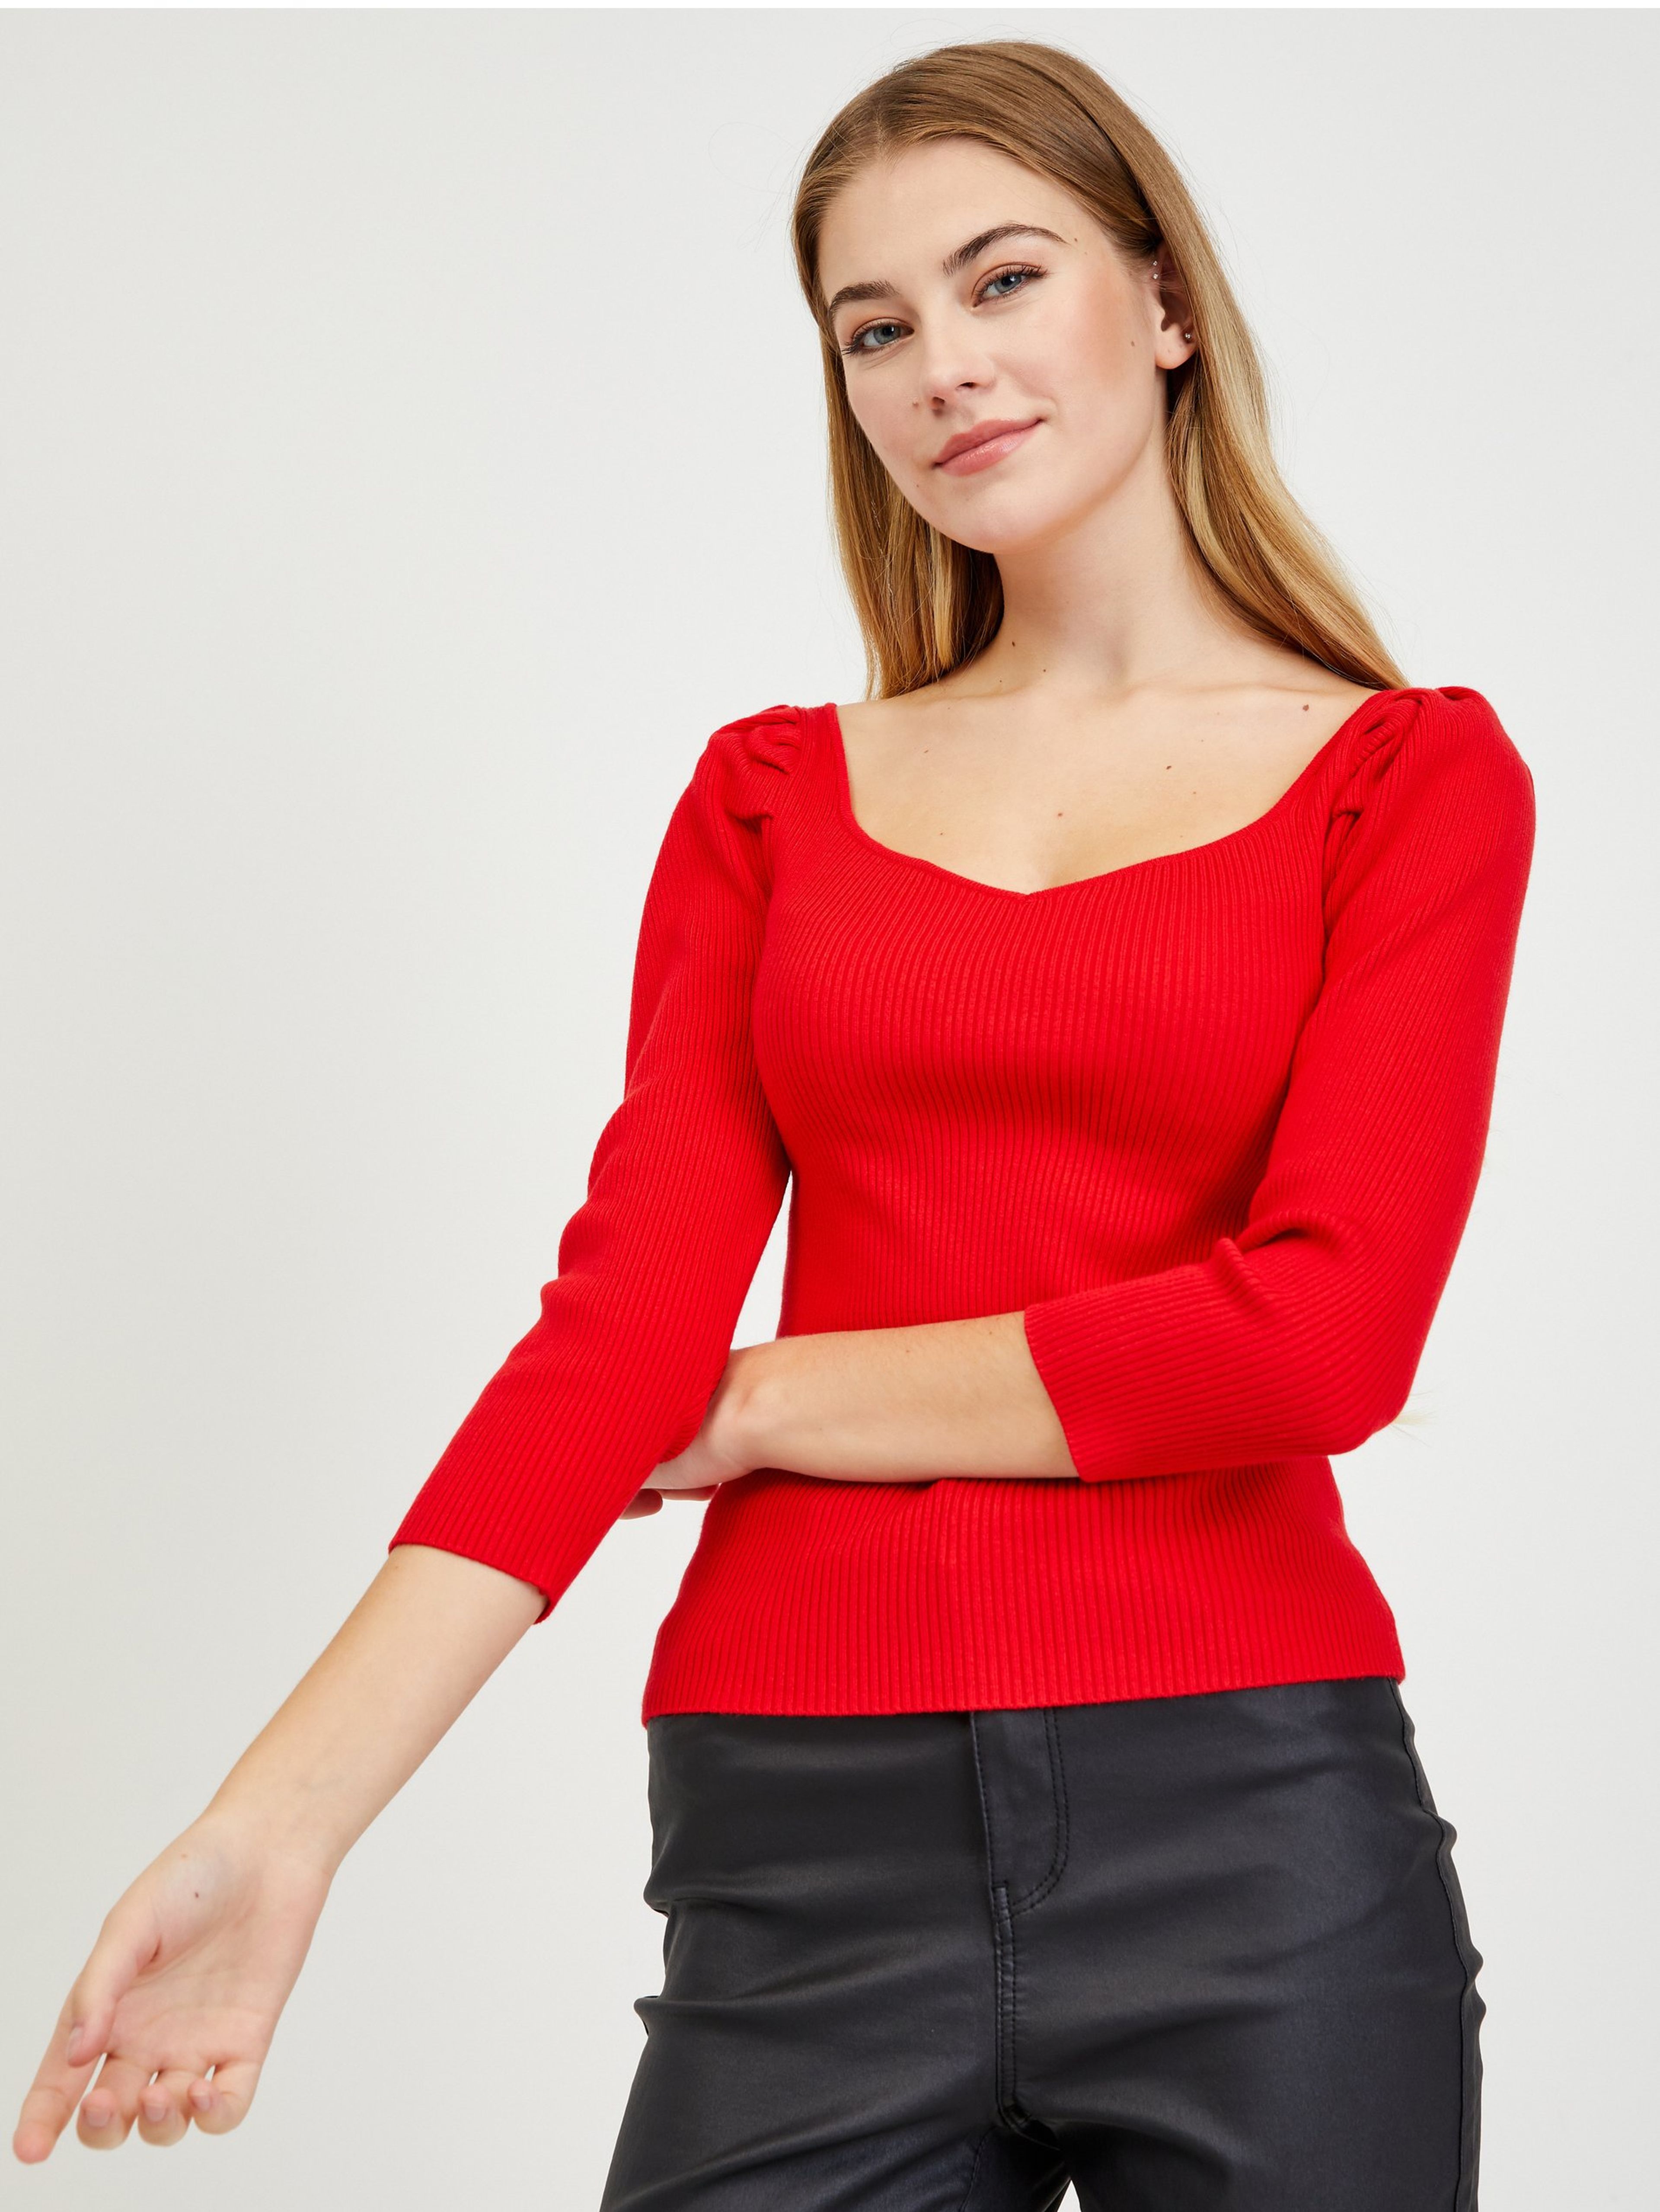 Červený dámsky sveter ORSAY